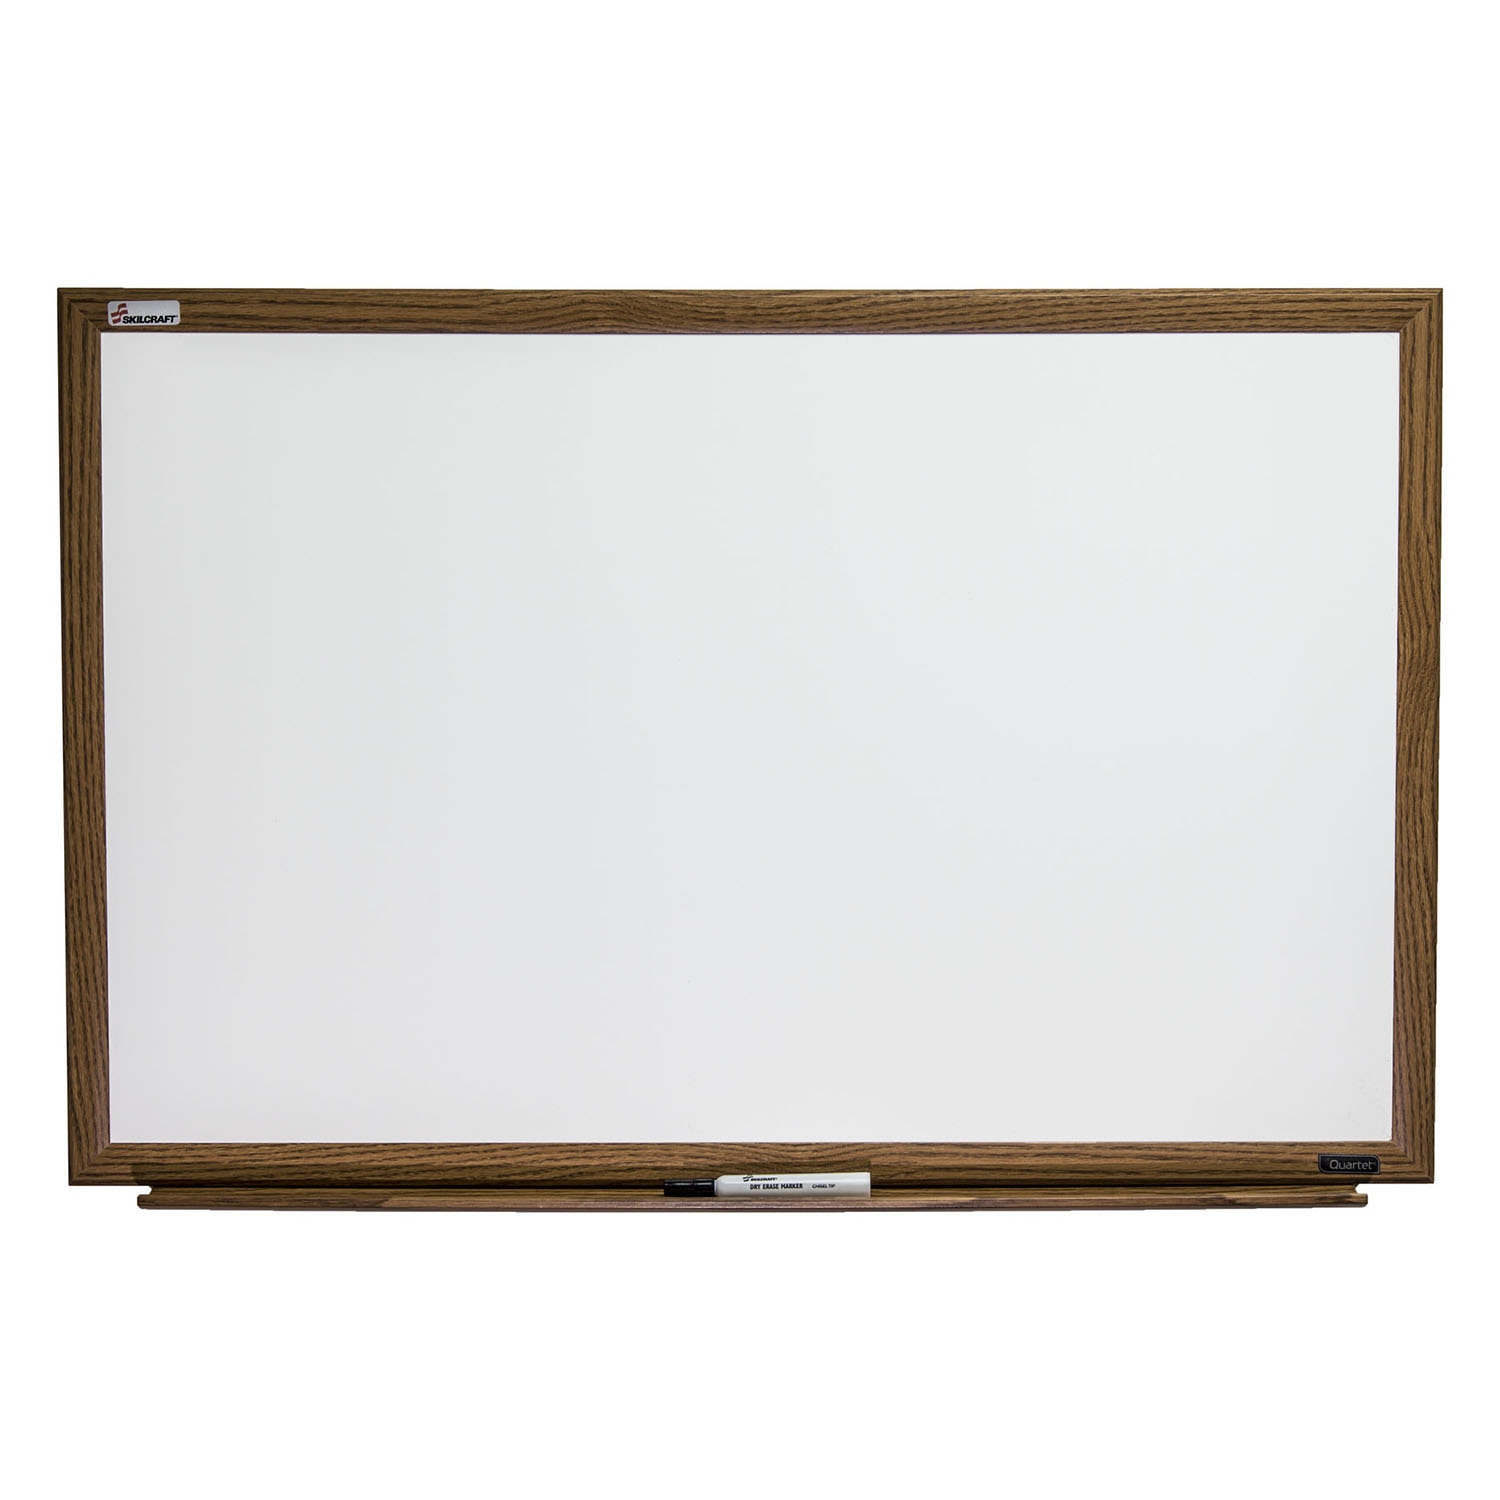 Dry Erase White Board, Melamine Surface, Oak Finish, 48" x 36"